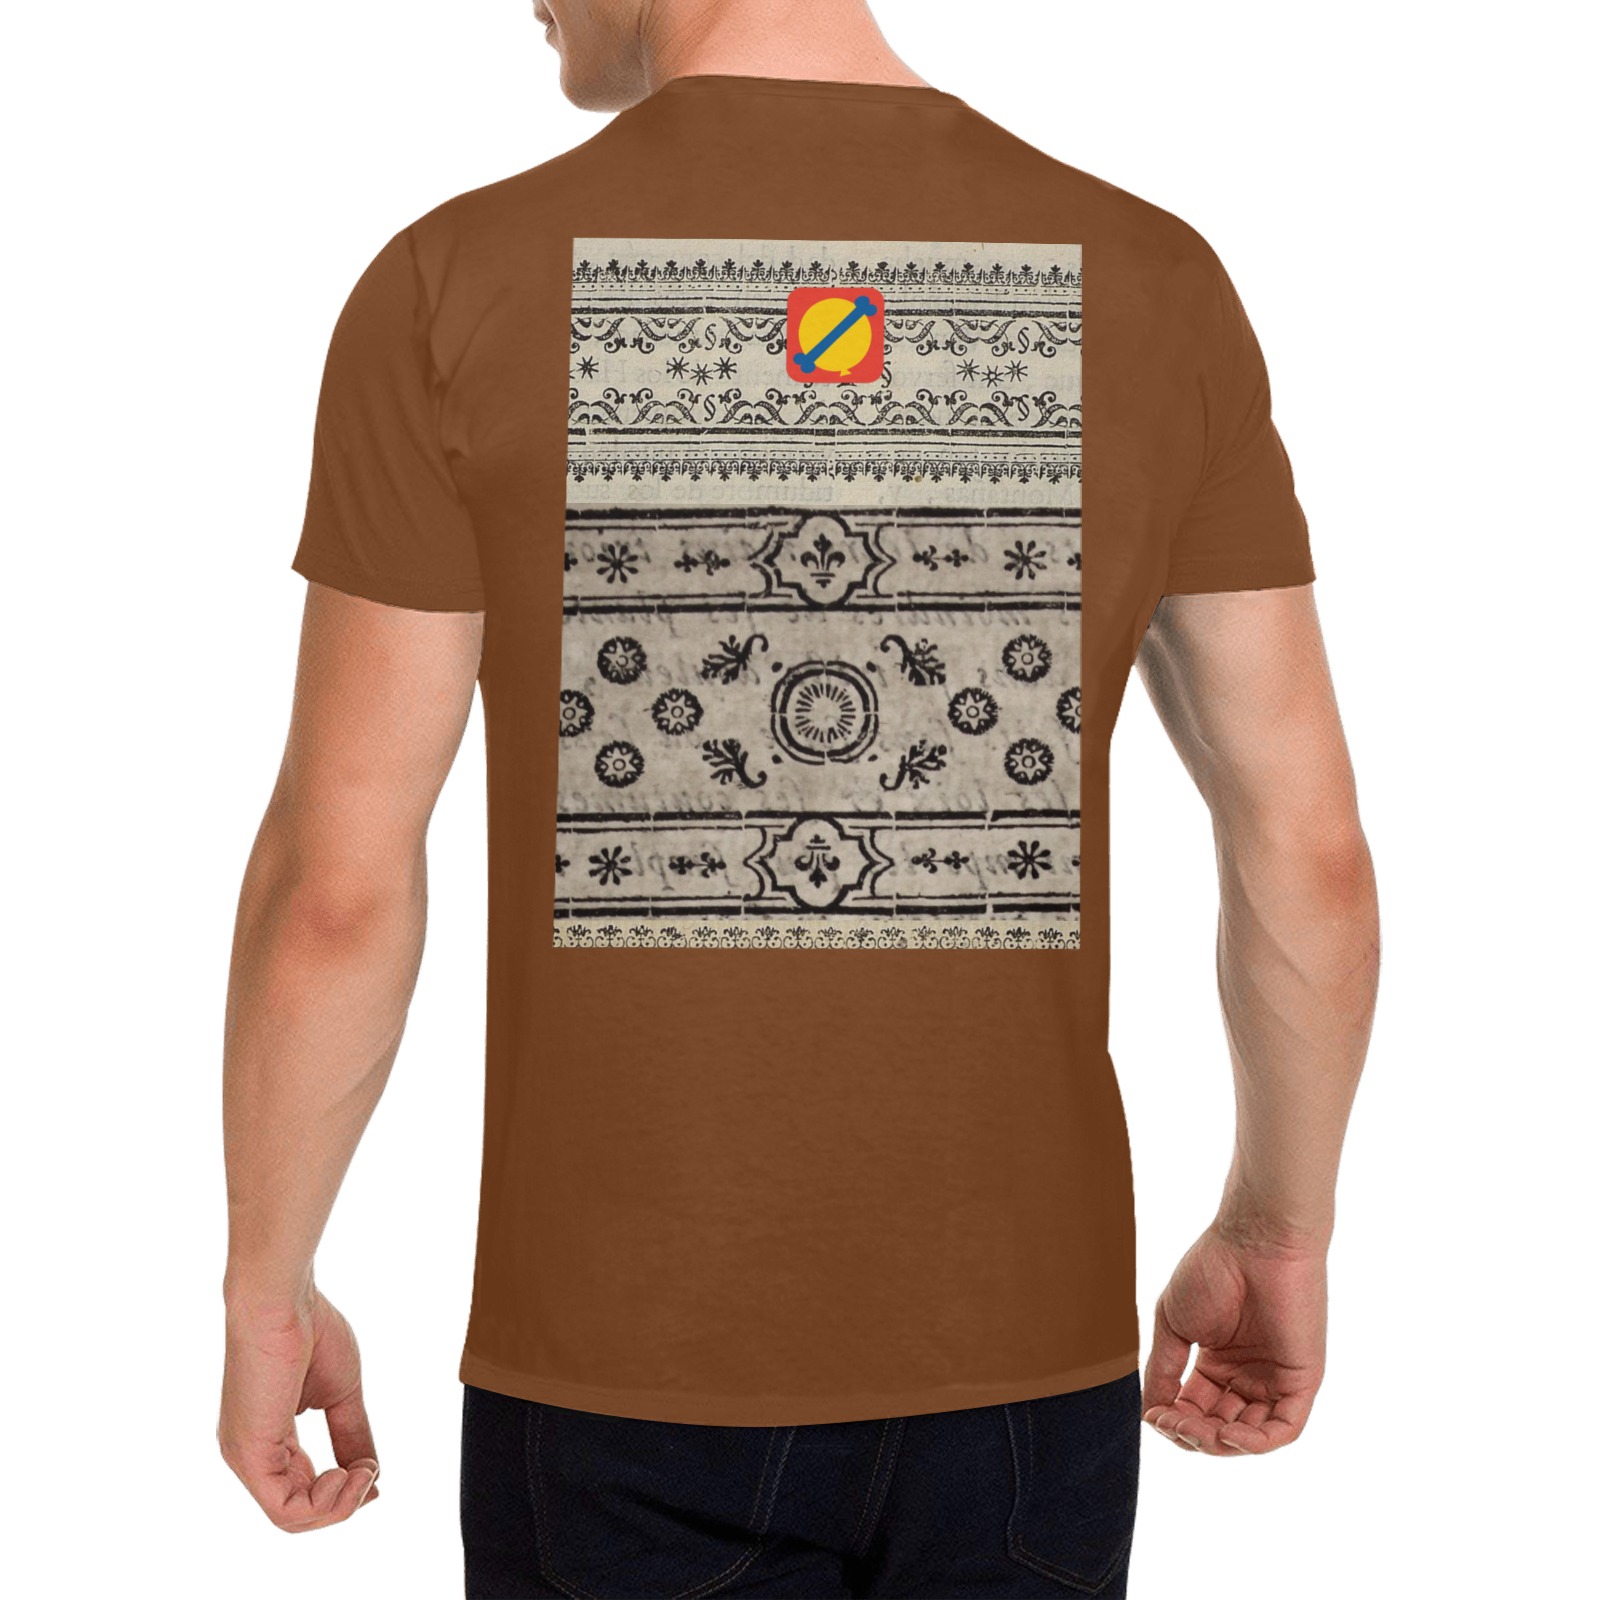 38795464915_8c4c969c7e_o Men's T-Shirt in USA Size (Two Sides Printing)